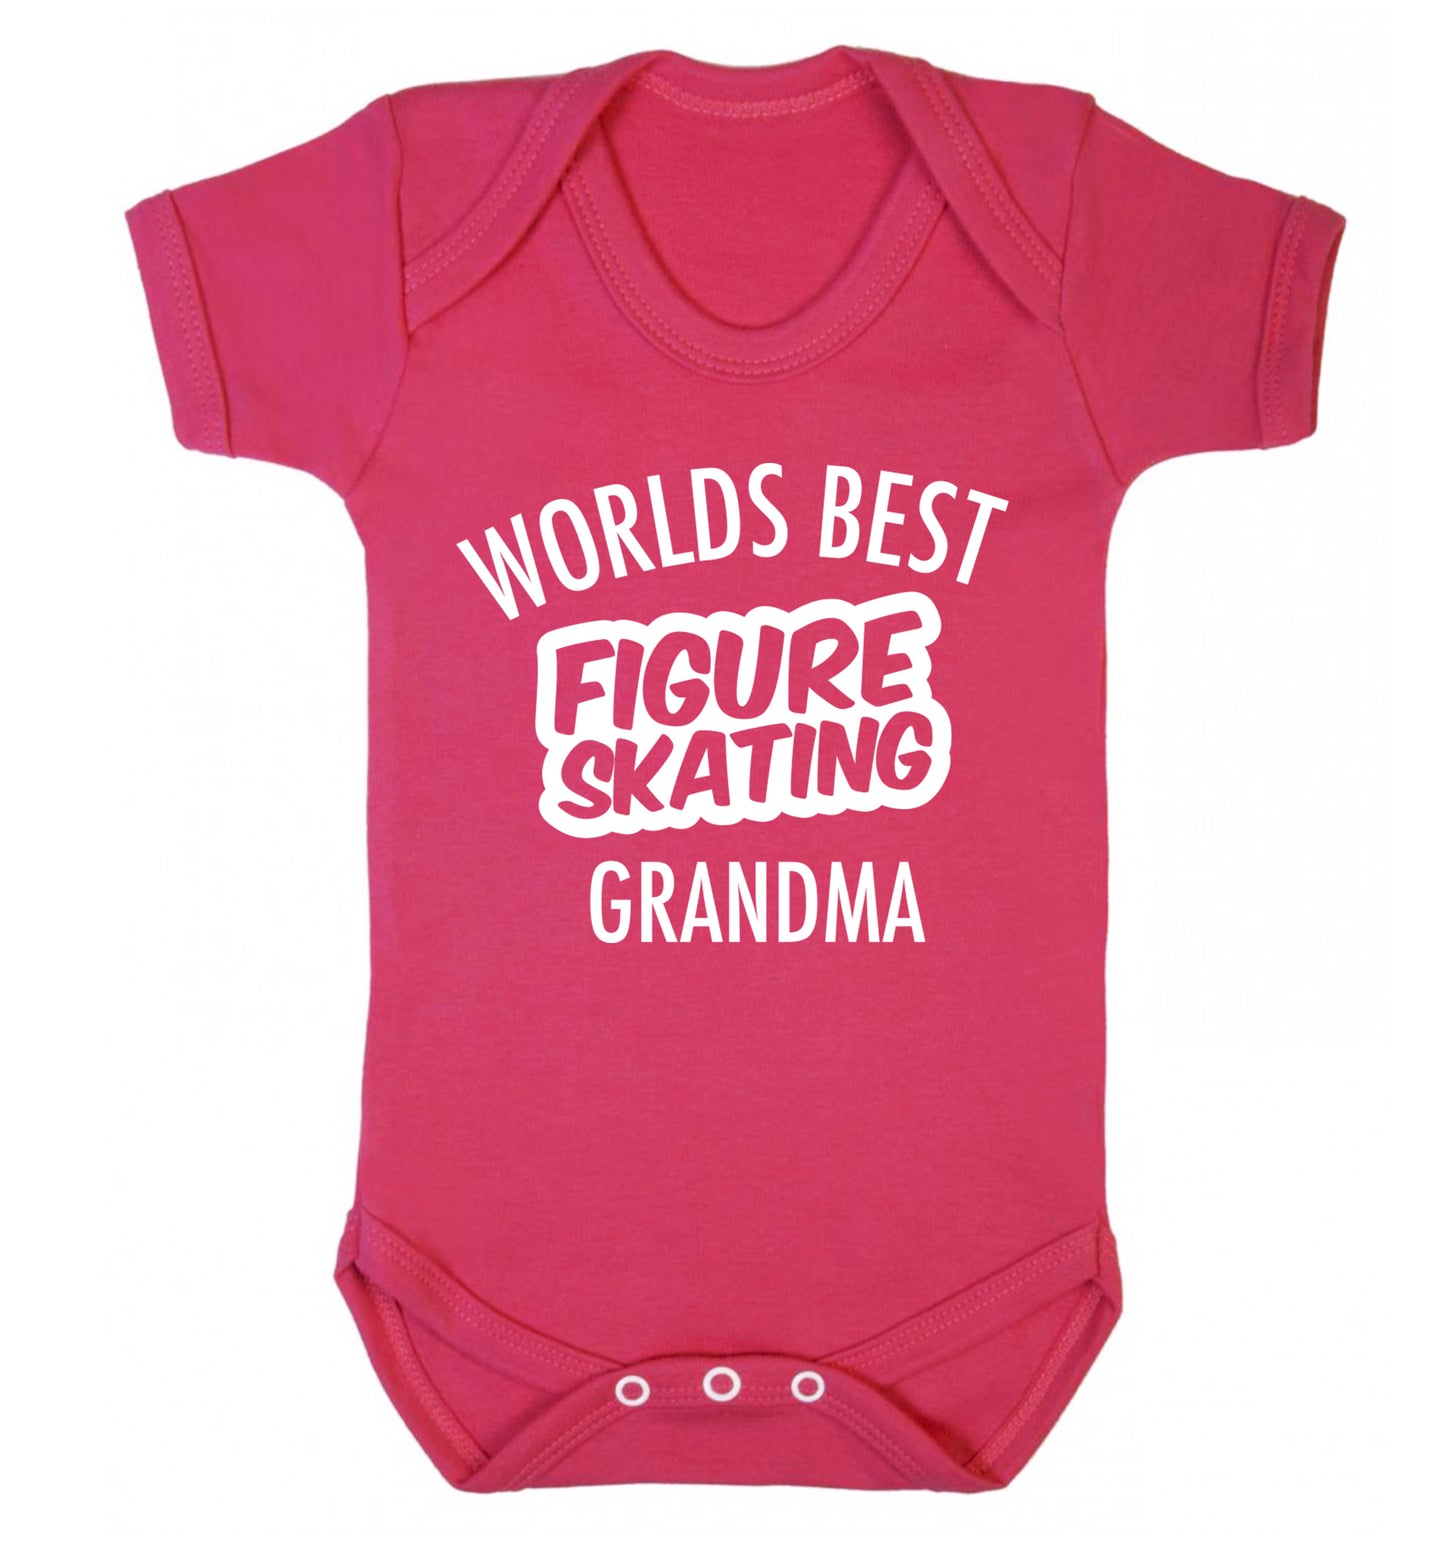 Worlds best figure skating grandma Baby Vest dark pink 18-24 months